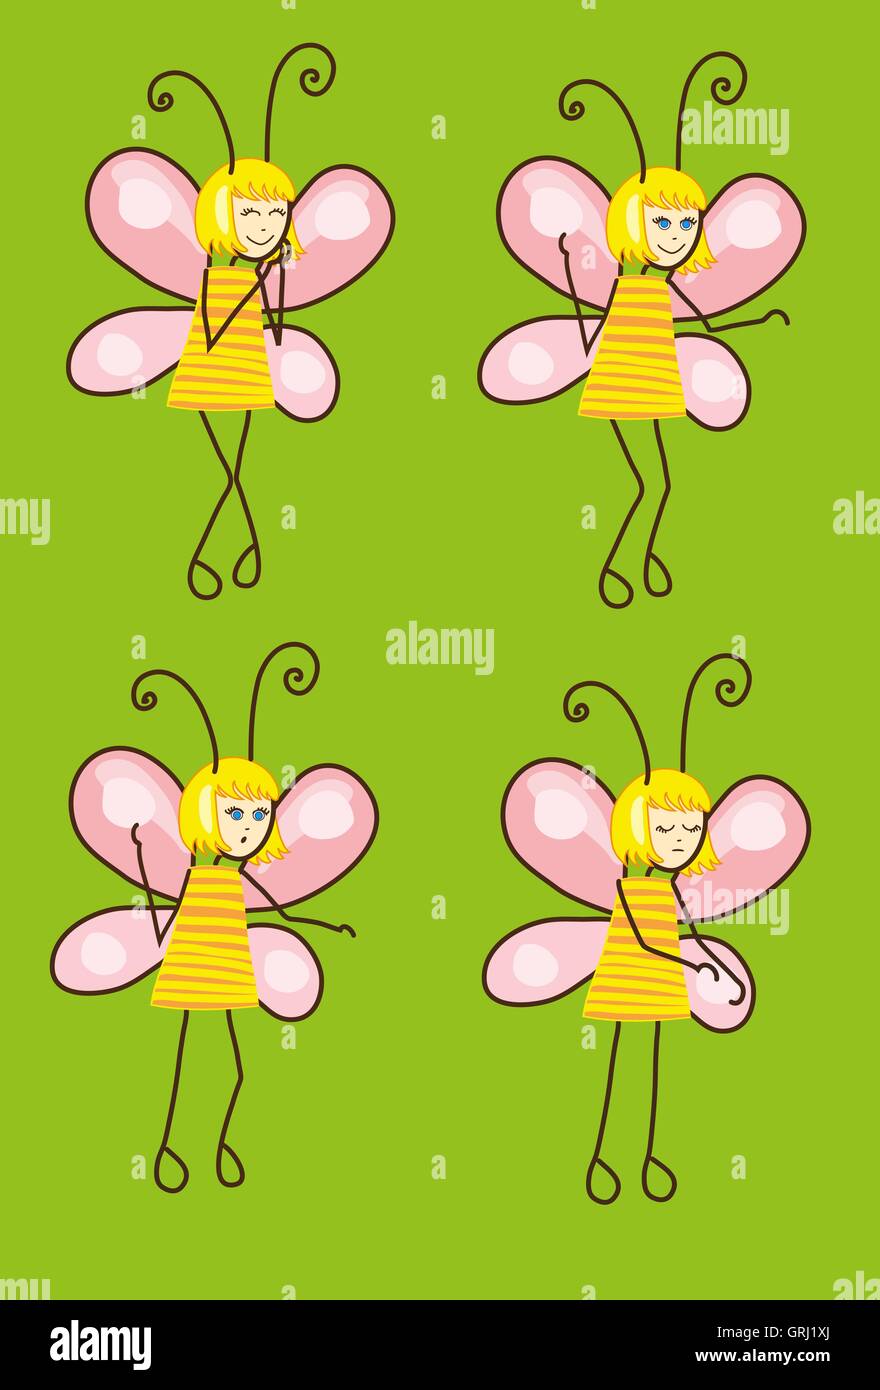 Satz von Cartoon Schmetterlinge mit unterschiedlichen Emotionen. Vektor Stock Vektor